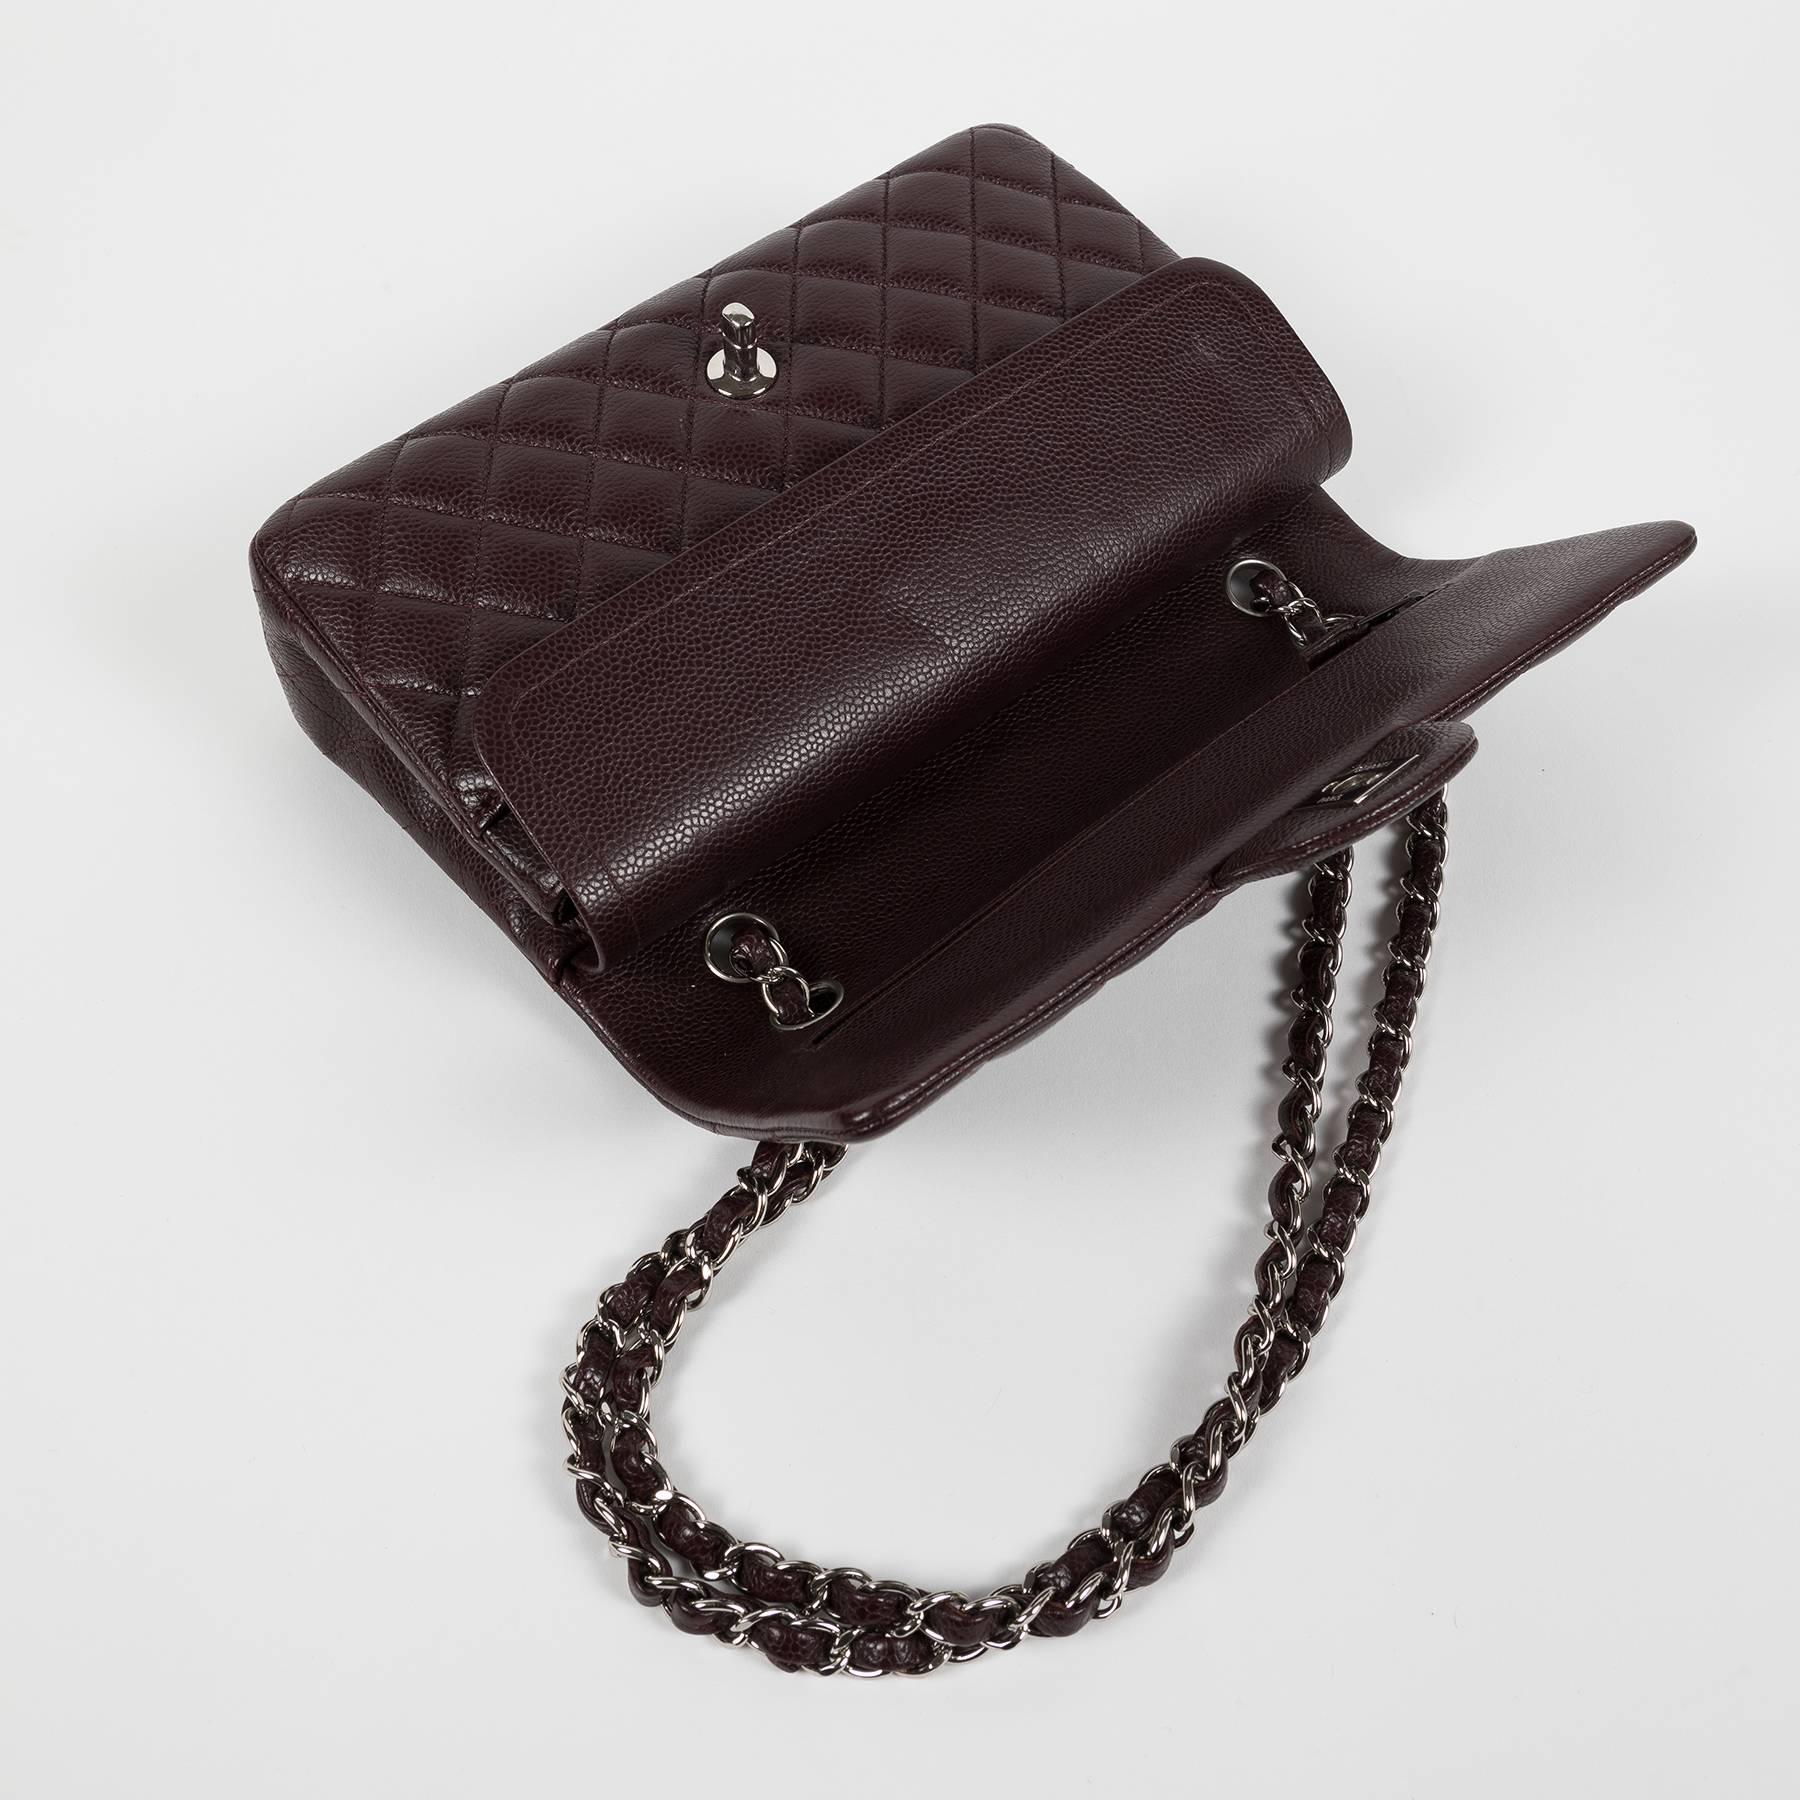 2014 Chanel 2.55 Bordeaux Caviar Flap Bag For Sale 2